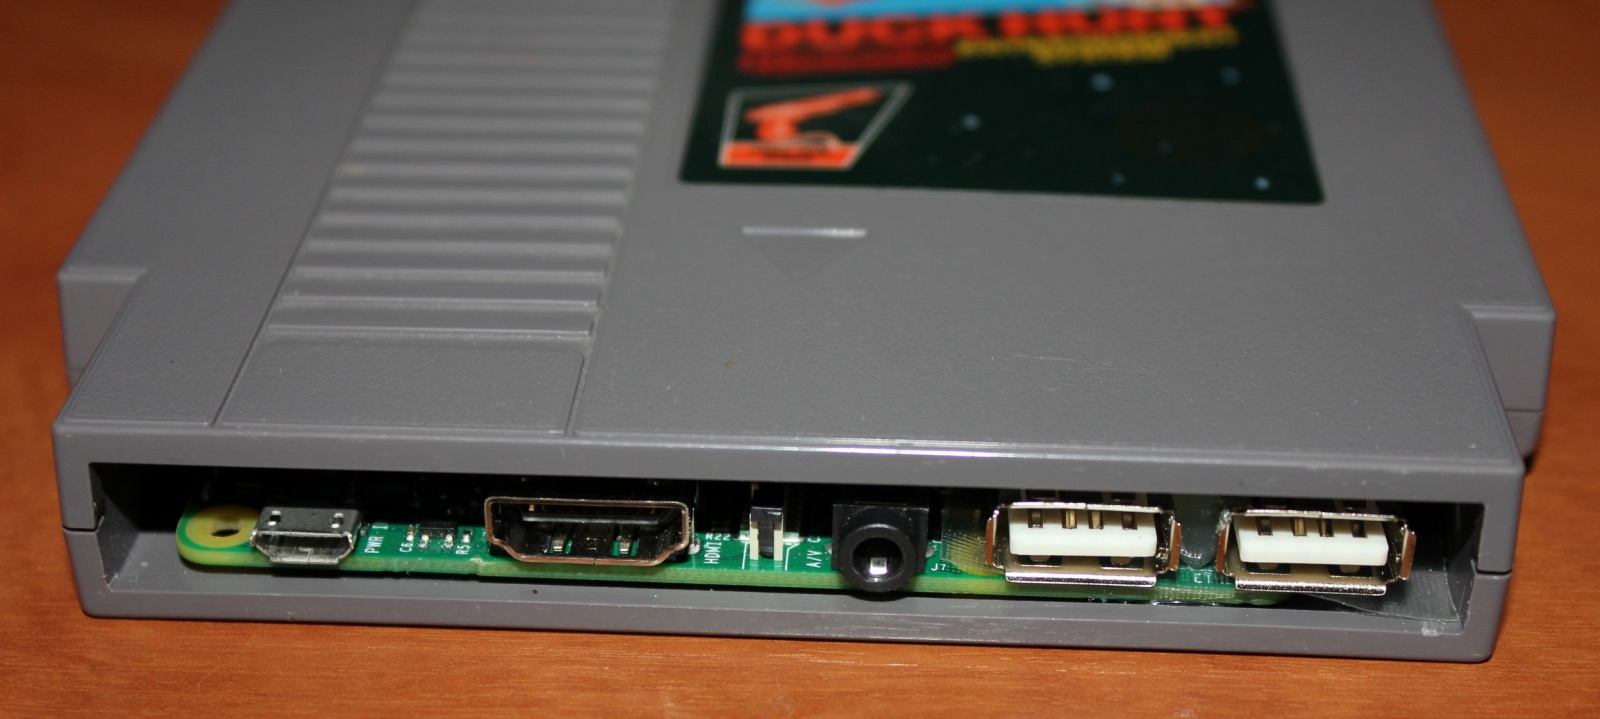 Raspberry Pi в картридже от NES - 6